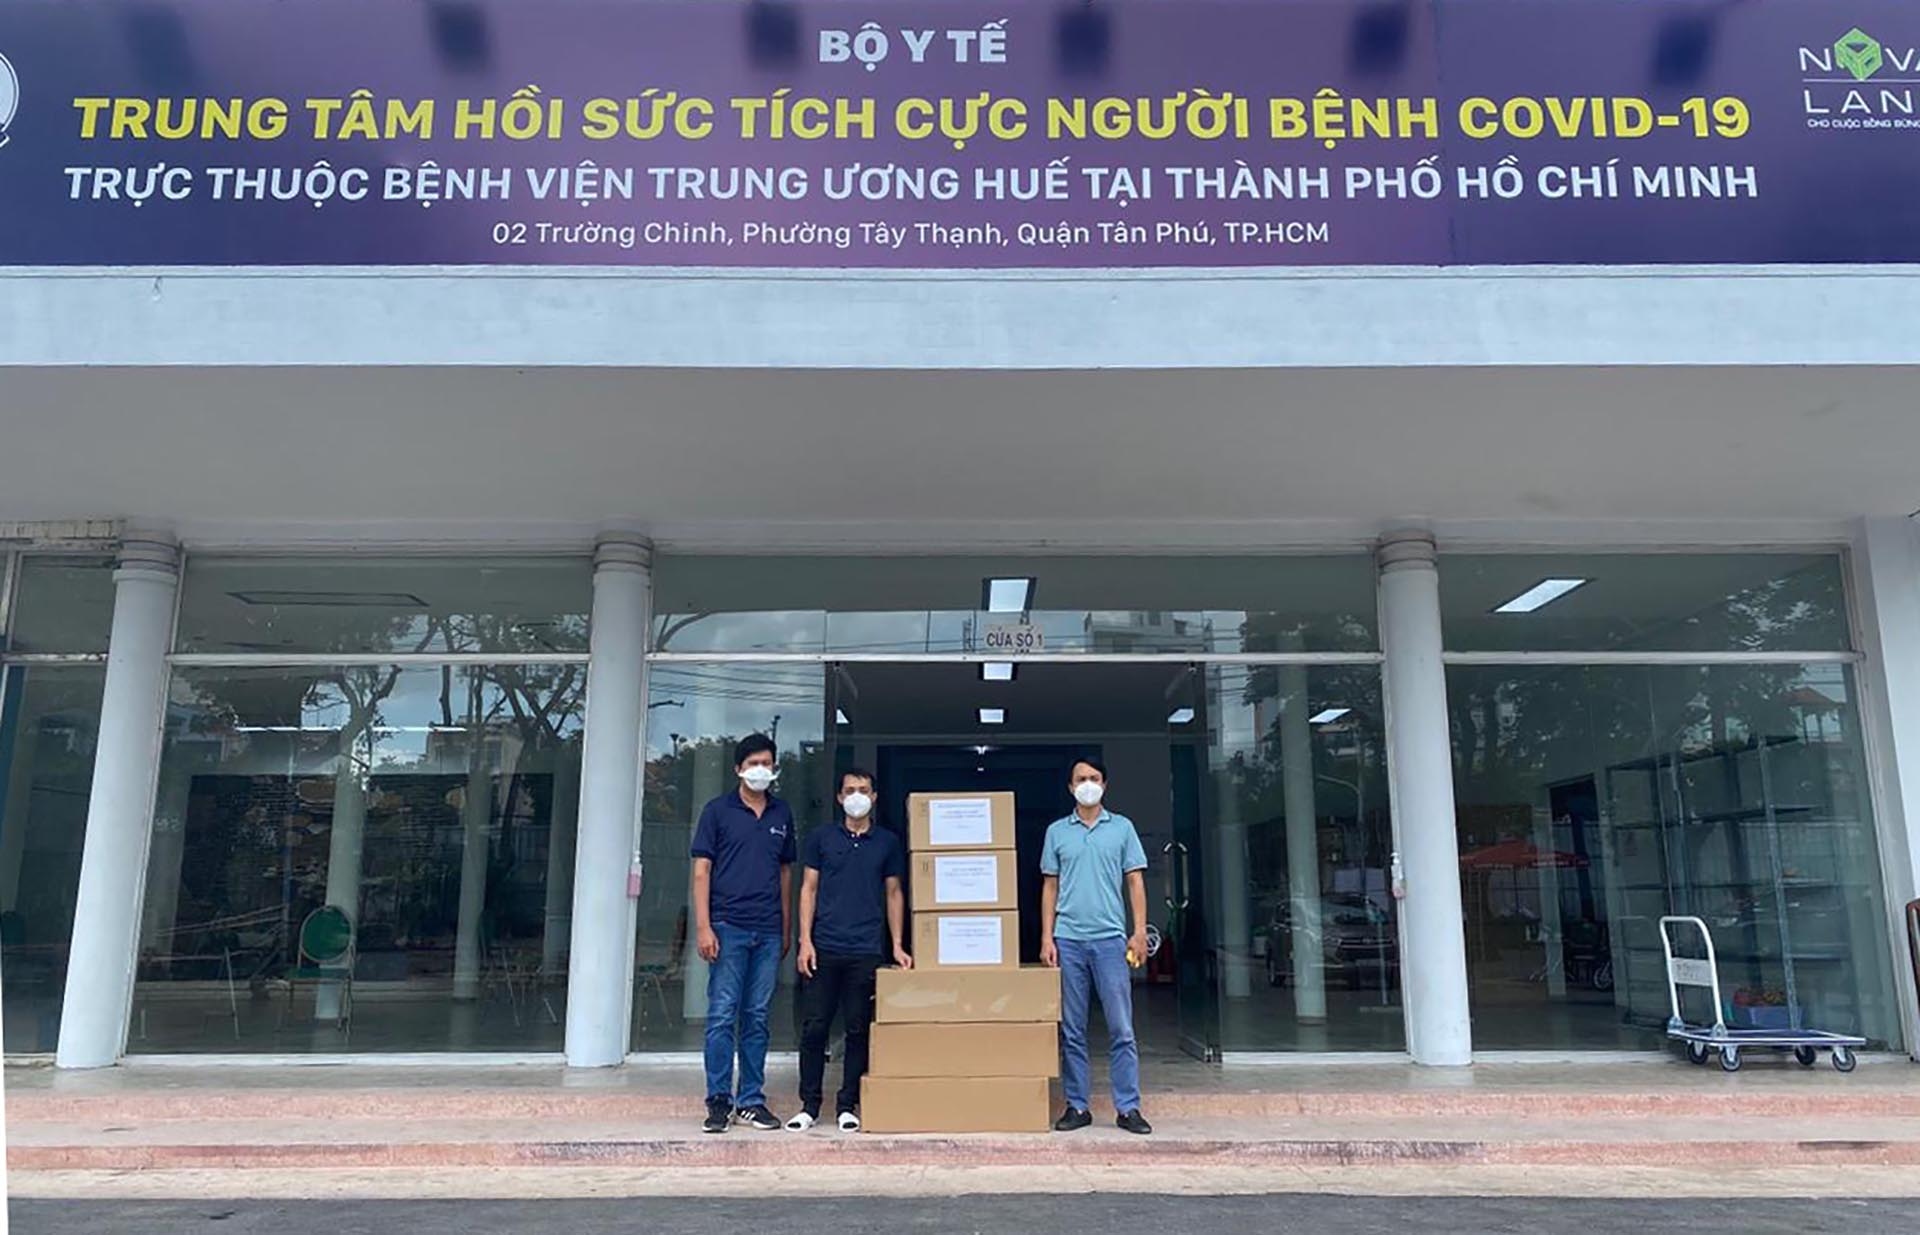 Bệnh viện dã chiến số 14 thuộc Bệnh viện Trung ương Huế đã tiếp nhận 3 máy Oxy dòng cao có tích hợp SP02 trị của cộng đồng người Việt và doanh nghiệp Hong Kong trao tặng.